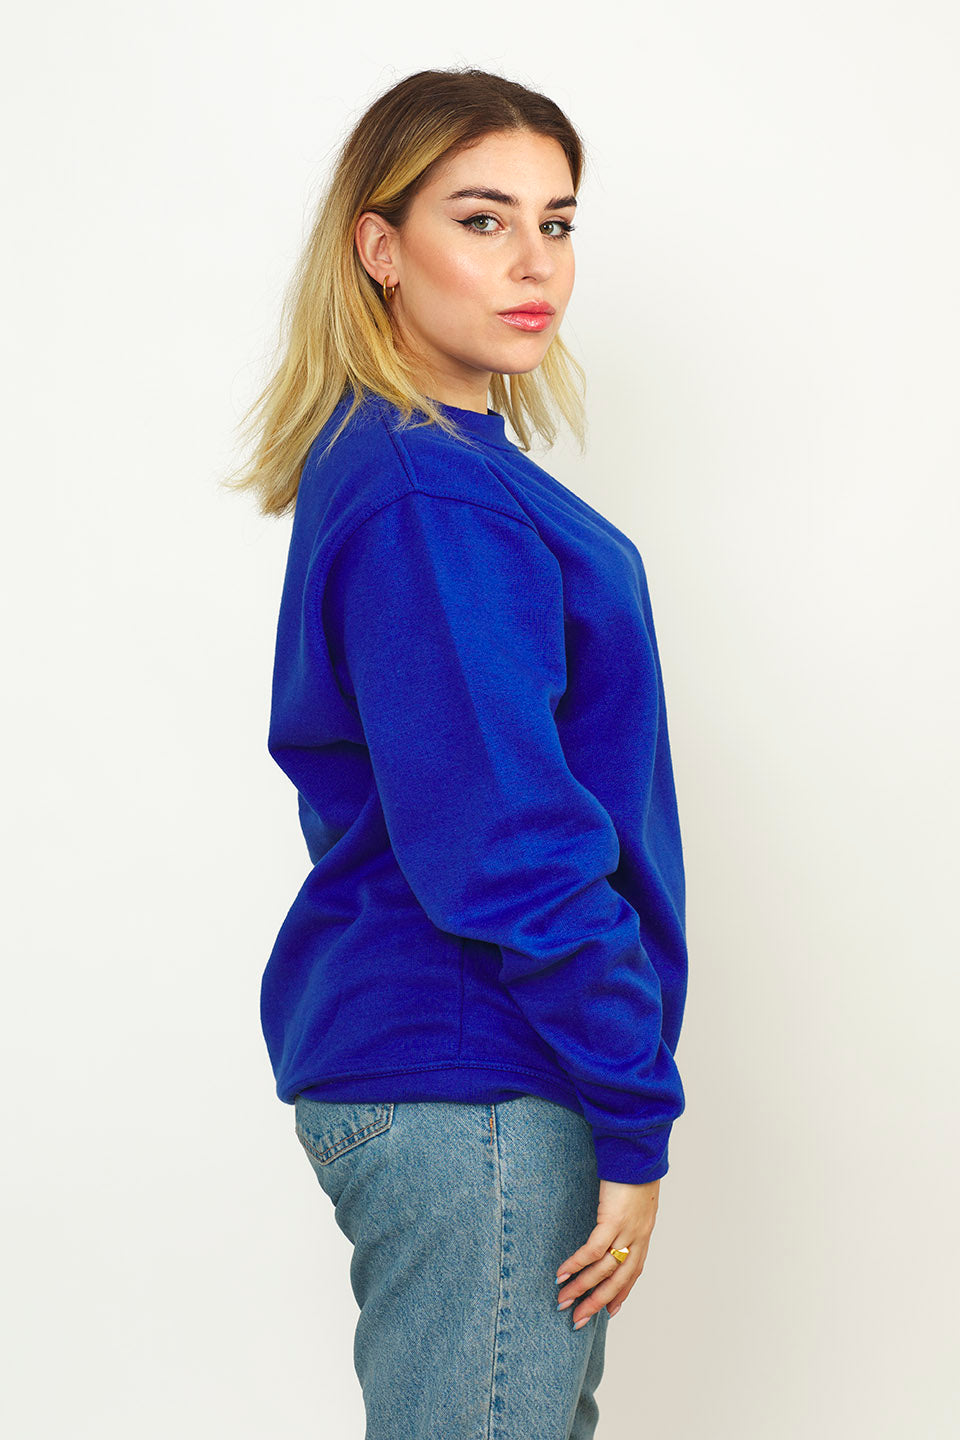 Radsow Apparel - Sweatshirt Col Rond Paris pour femmes Bleu Royal - Radsow Apparel 